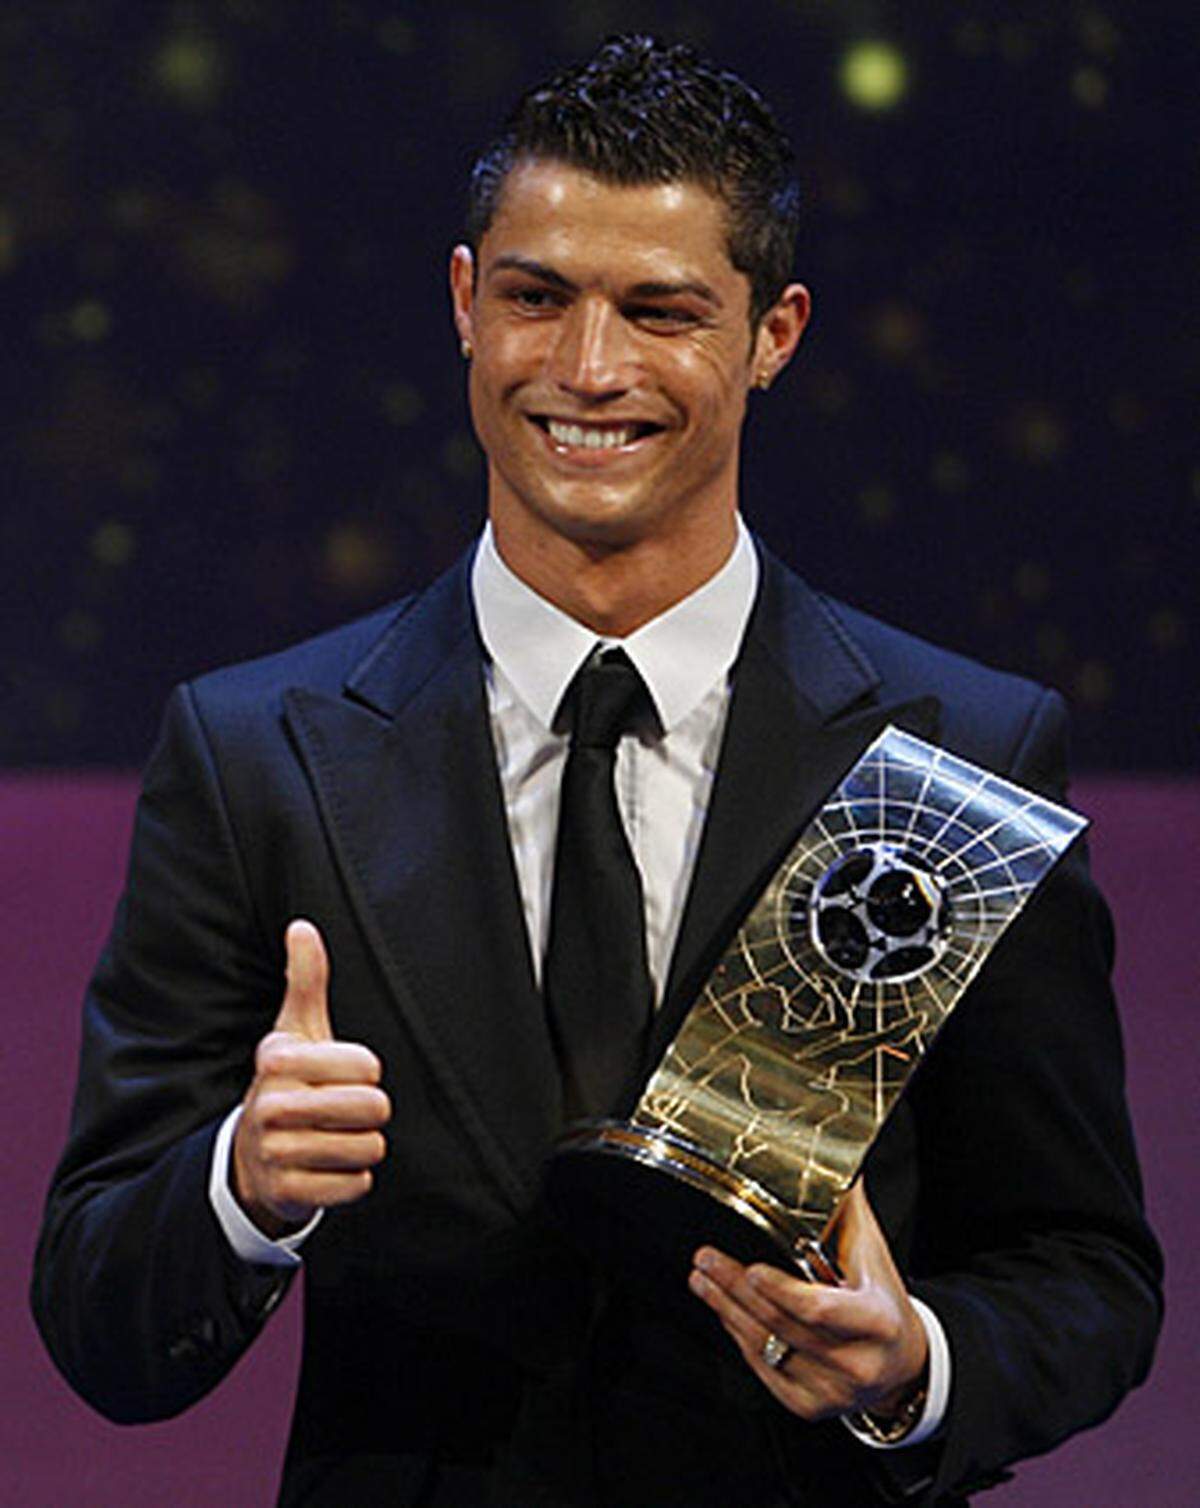 ... und schließlich wurde er im Jänner 2008 noch als Fifa-Fußballer des Jahres ausgezeichnet. Da konnte Ronaldo wieder lächeln, denn ....